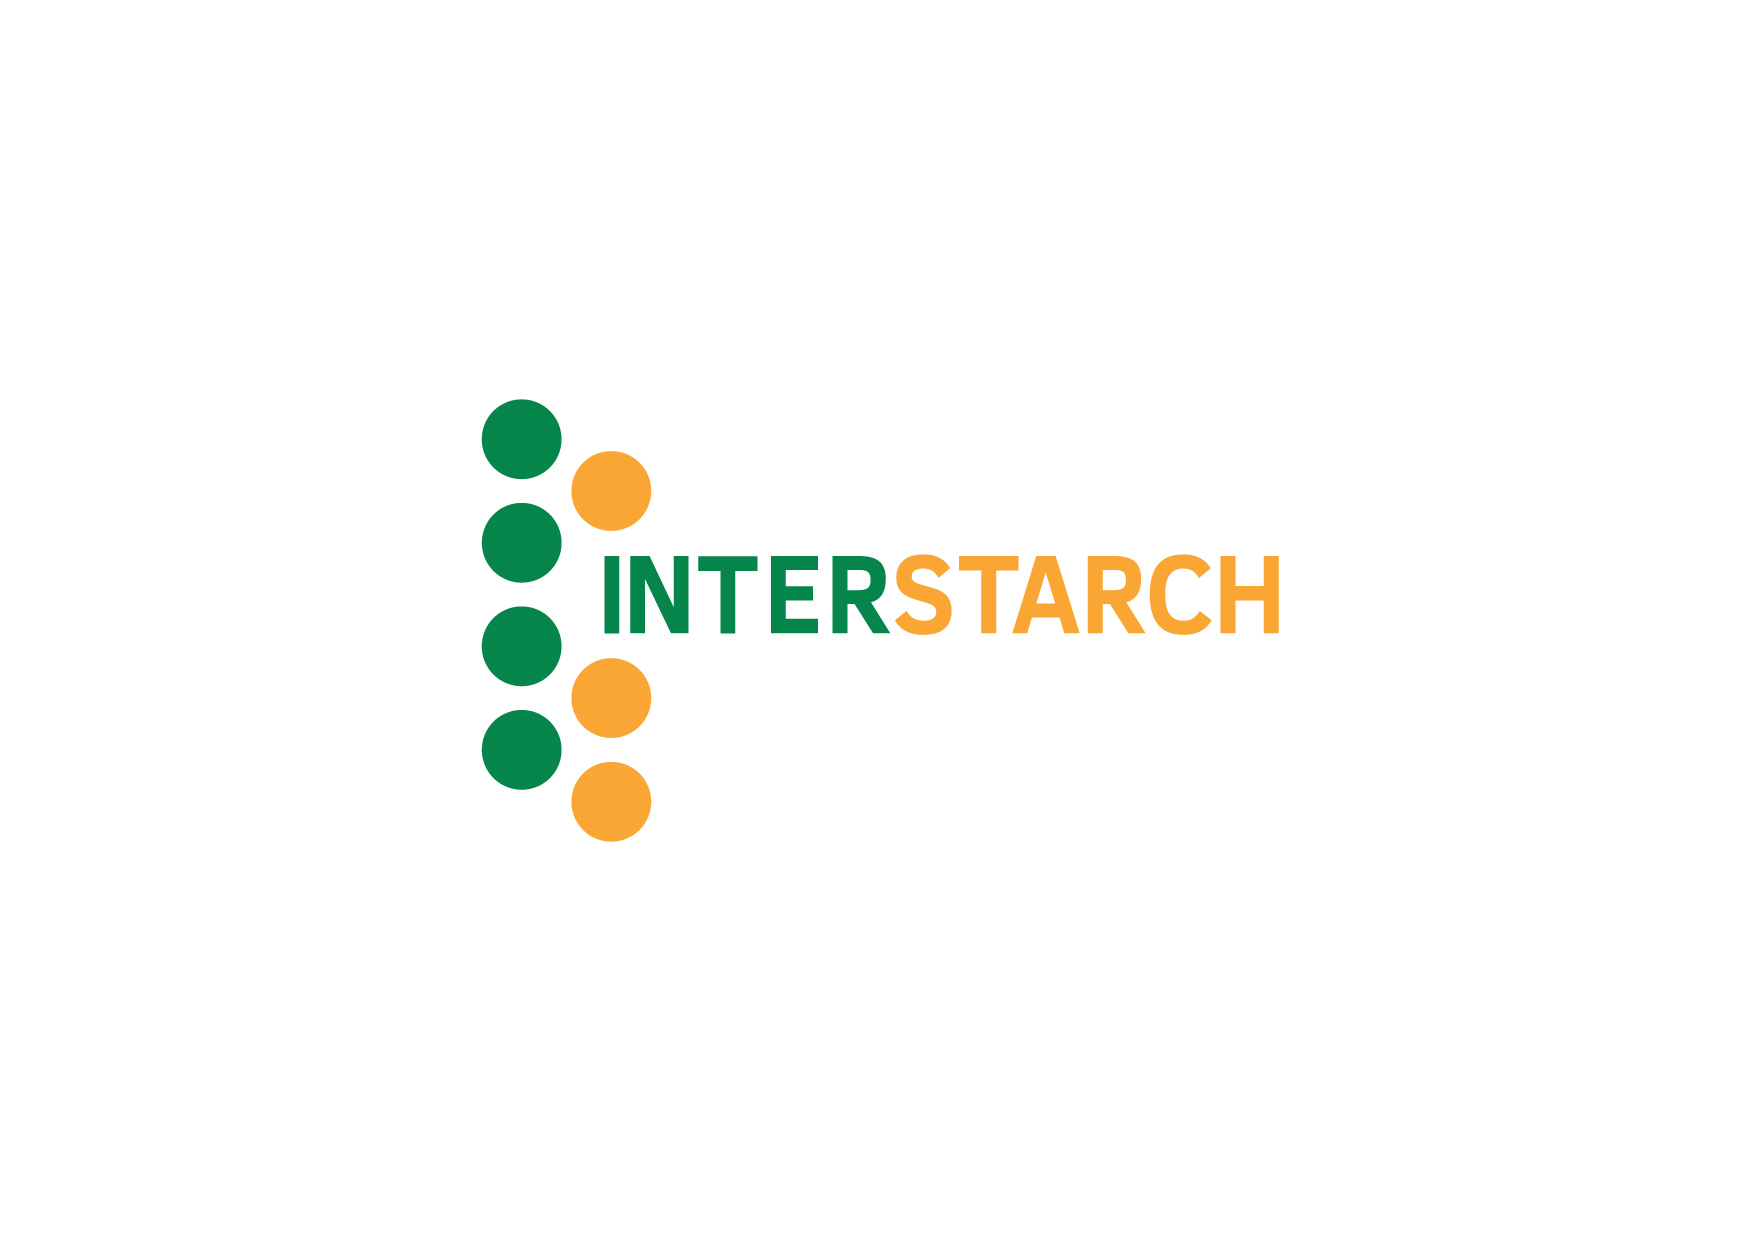 Interstarch